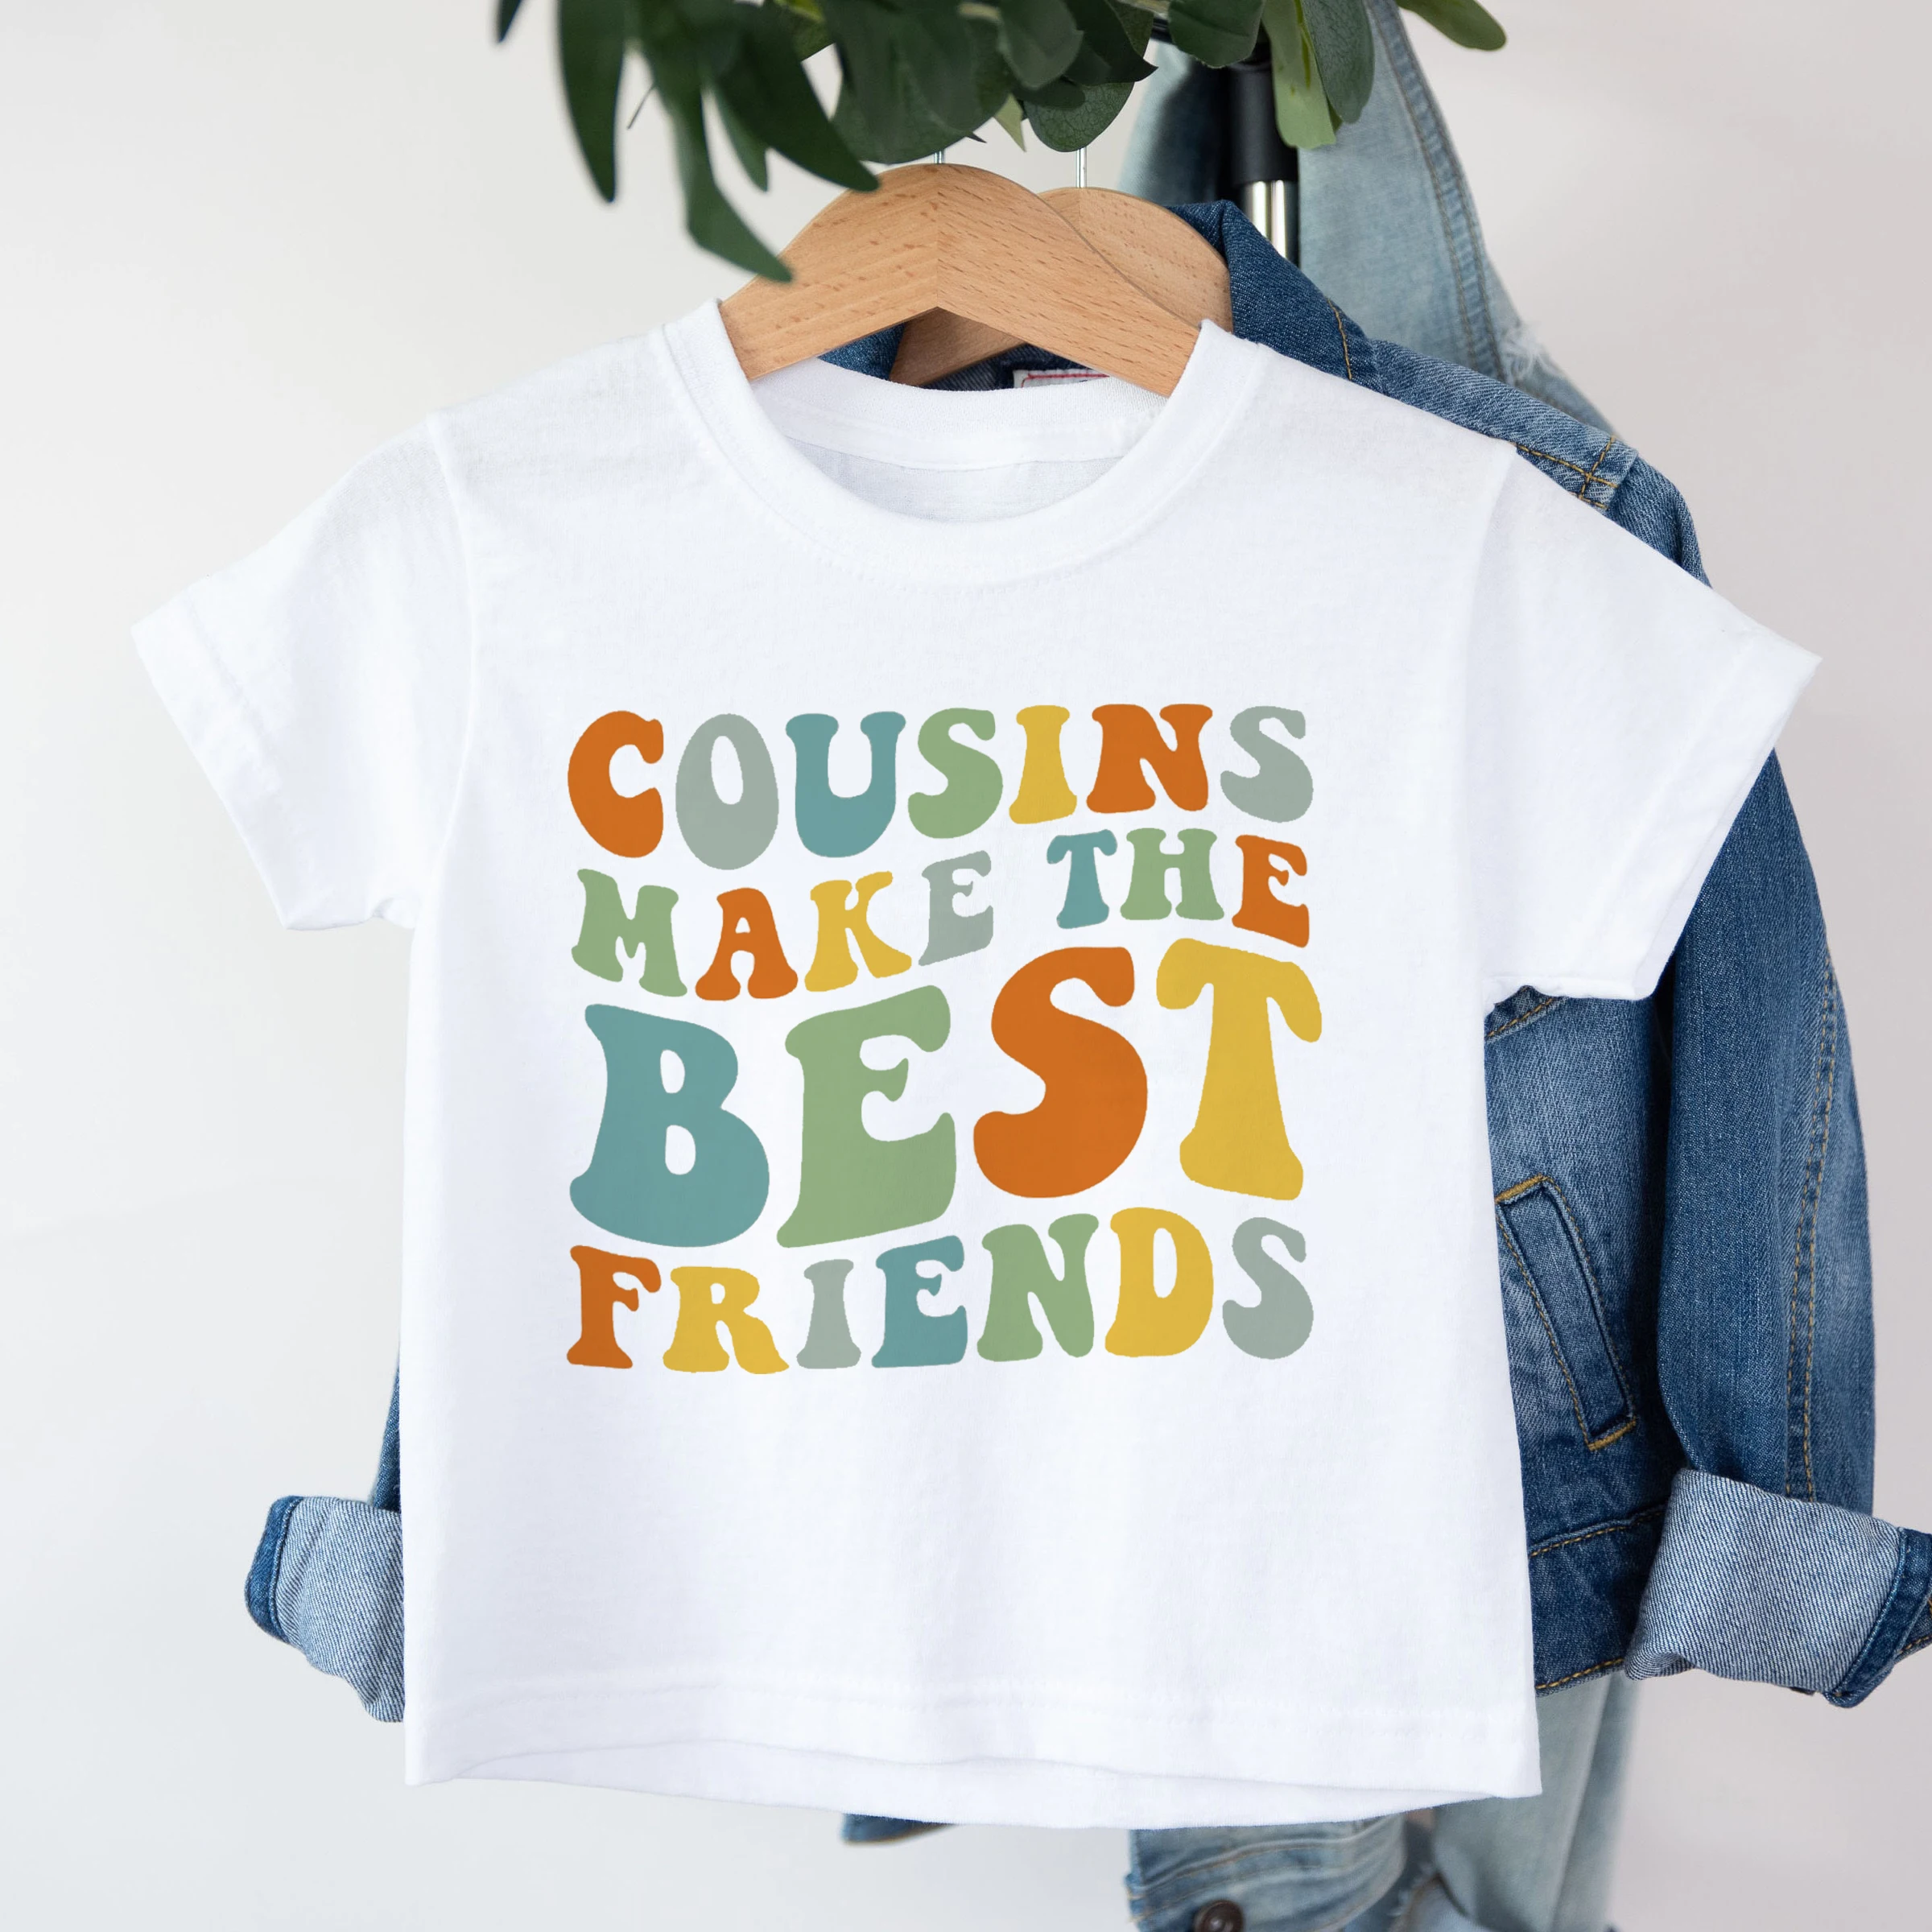 

Cousins Make The Best Friends Printed Kids Shirt Boys Girls Summer T-shirt Cousin Matching Clothes Child Short Sleeve Tee Shirts